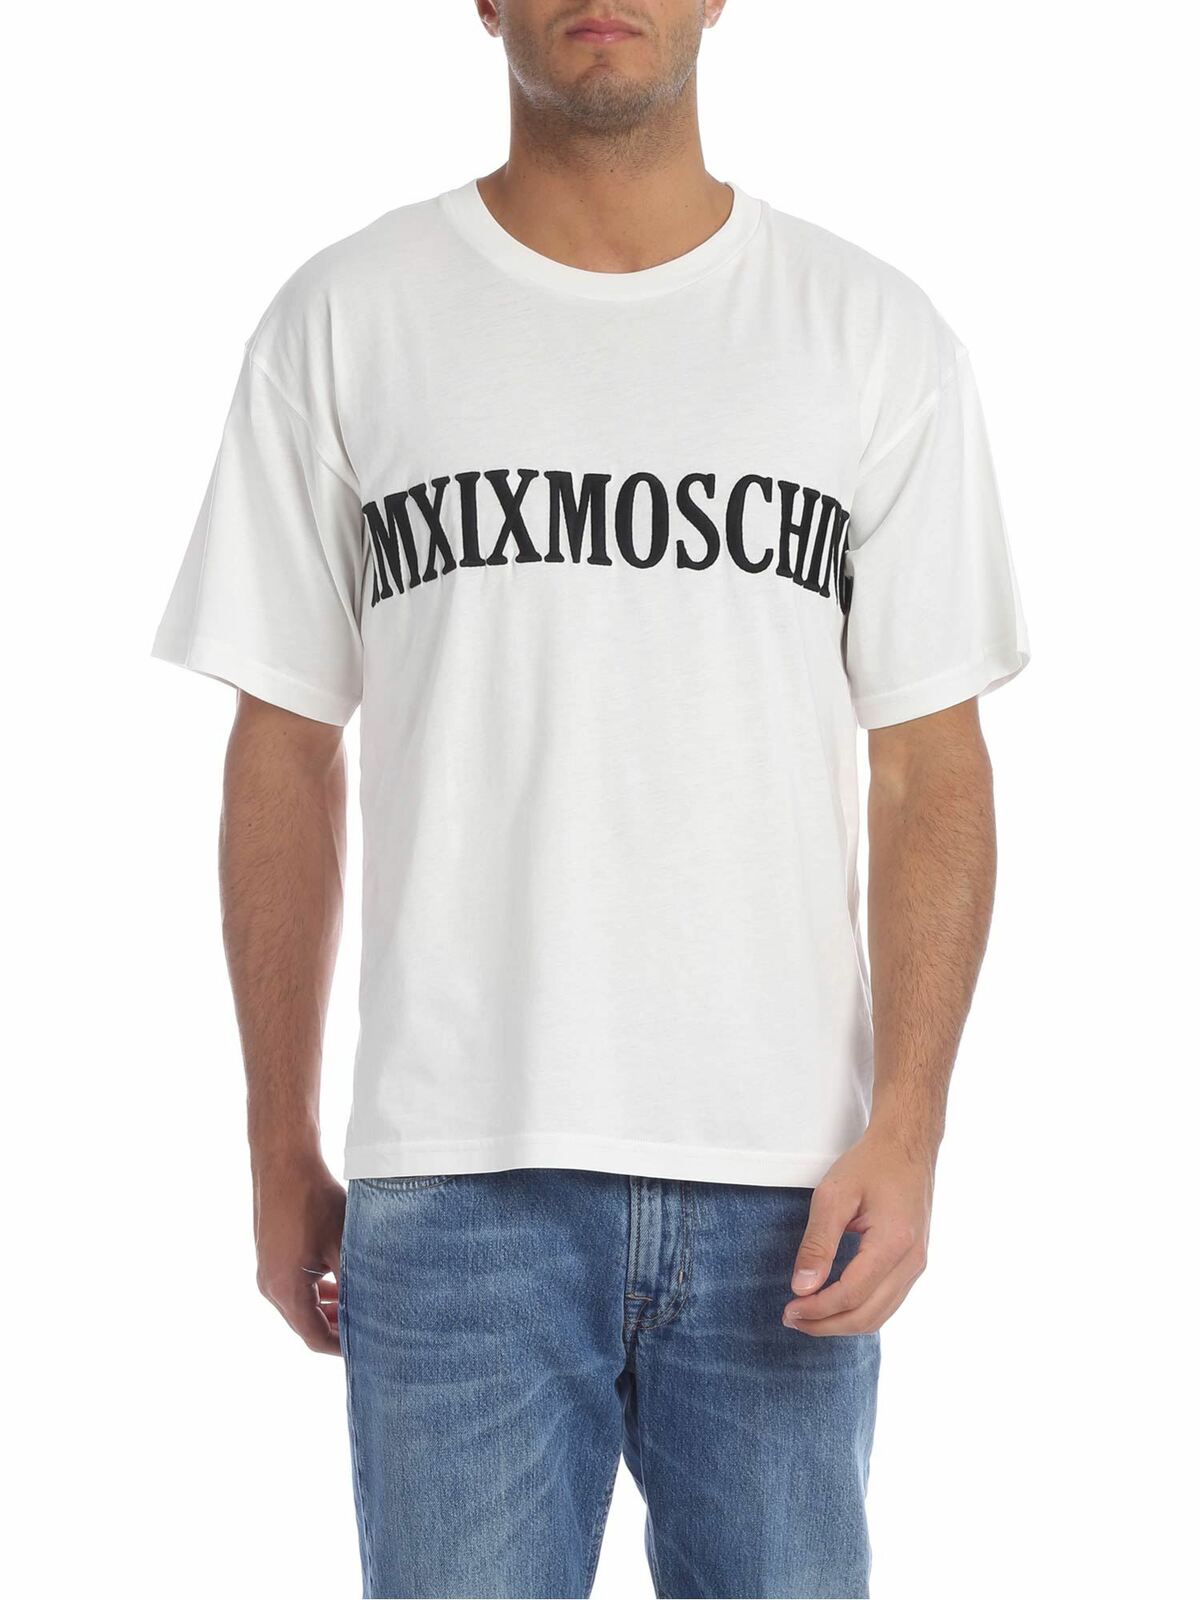 Moschino T-shirt Mmxix  In White